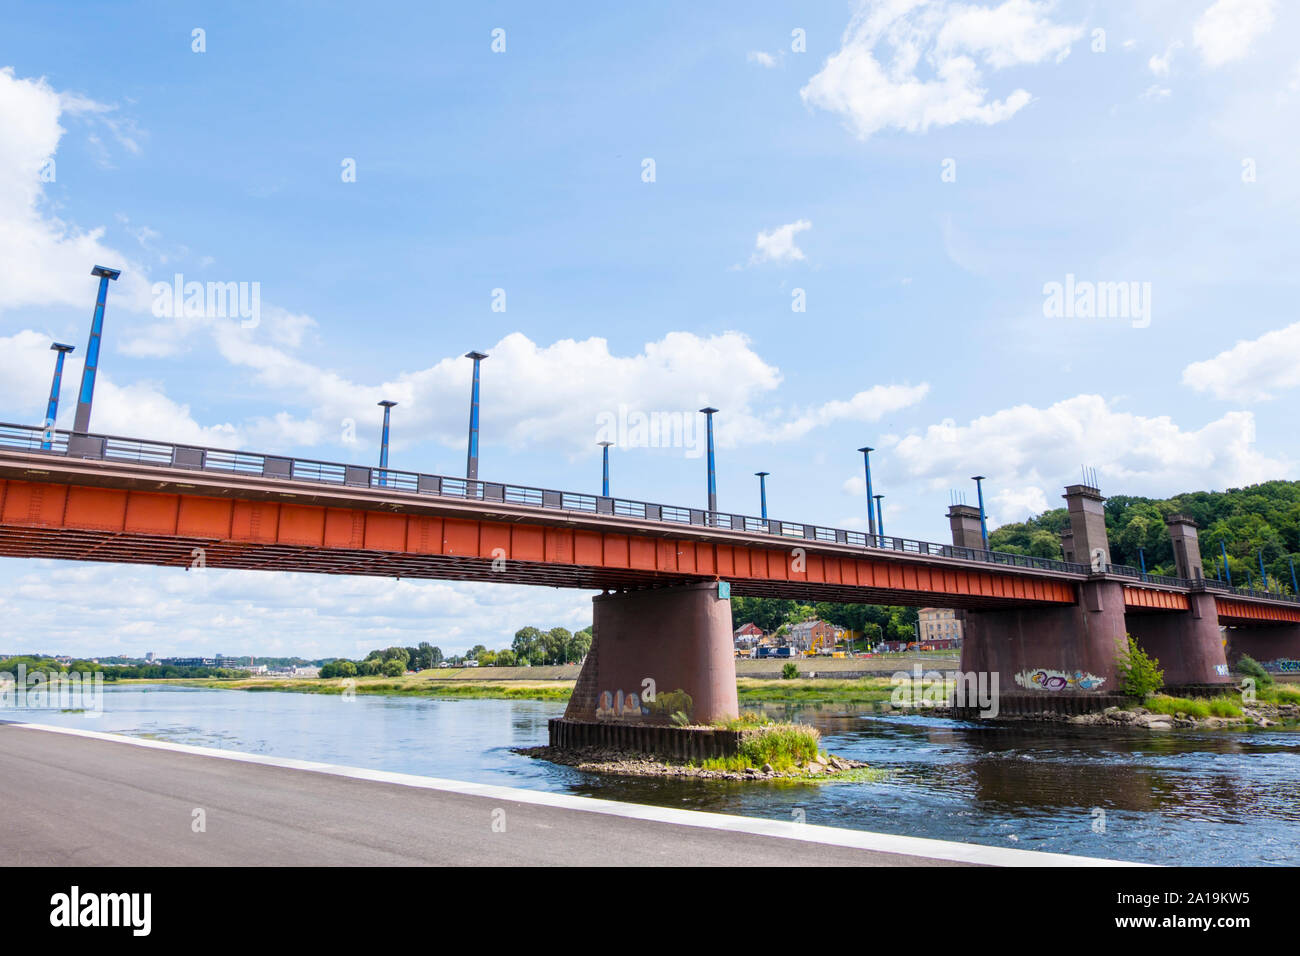 Vytauto Didziojo tiltas, Vytautas the Great Bridge, Kaunas, Lithuania Stock Photo